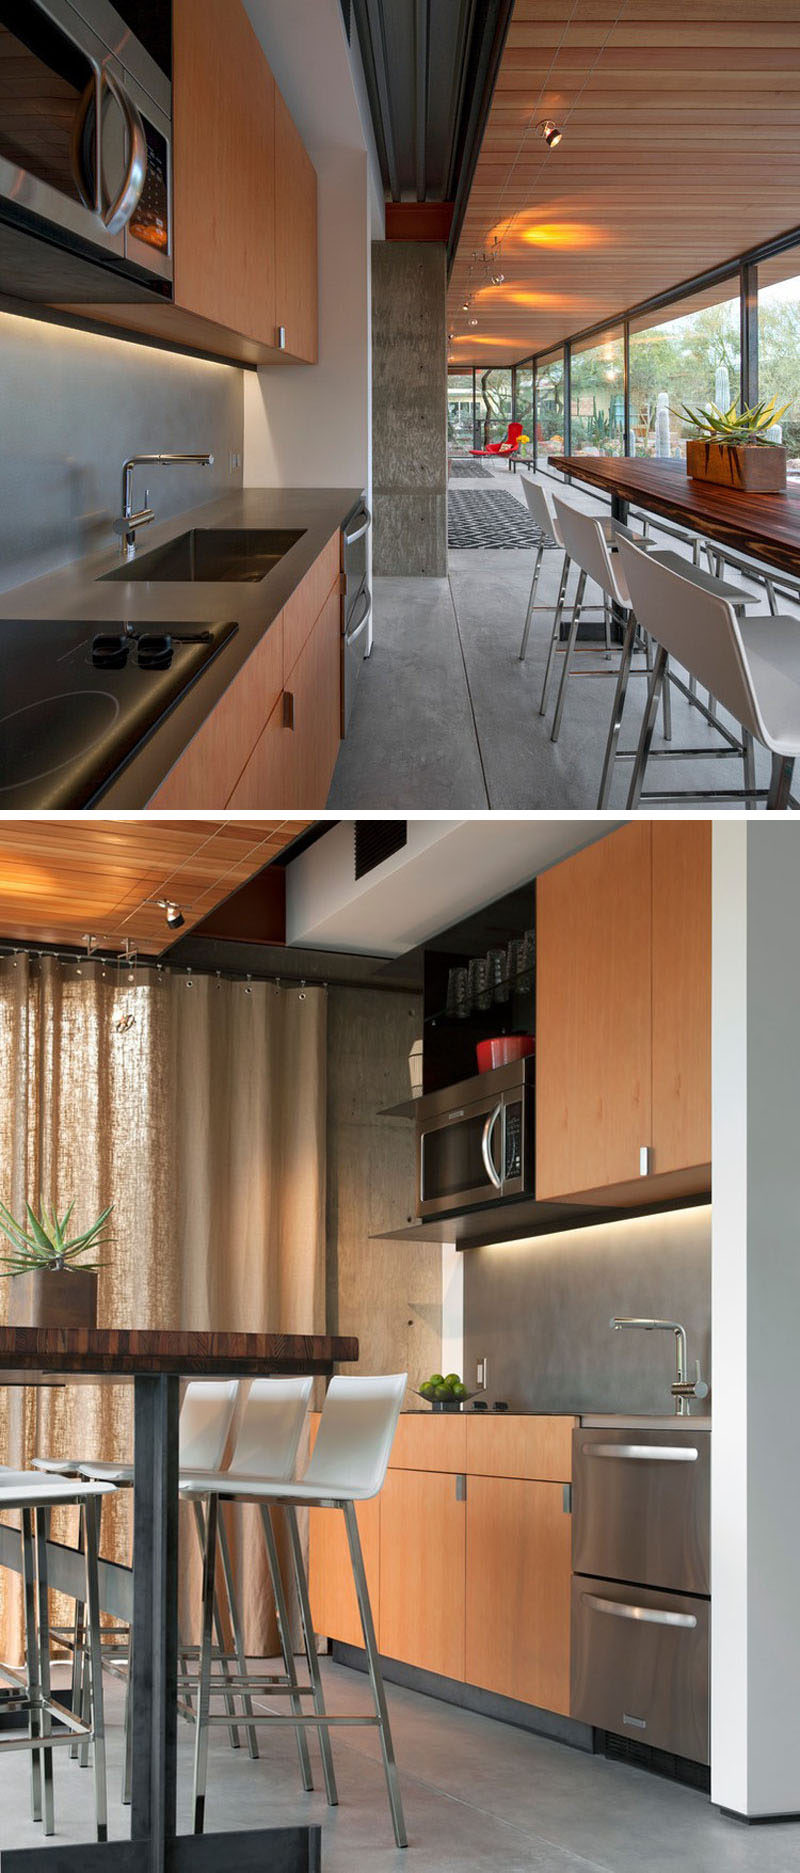 В этом гостевом доме есть небольшая кухня со всем необходимым и барный стол с большим сидячих мест. # МаленькаяКухня #KitchenDesign # WoodKitchen # InteriorDesign # ModernKitchen